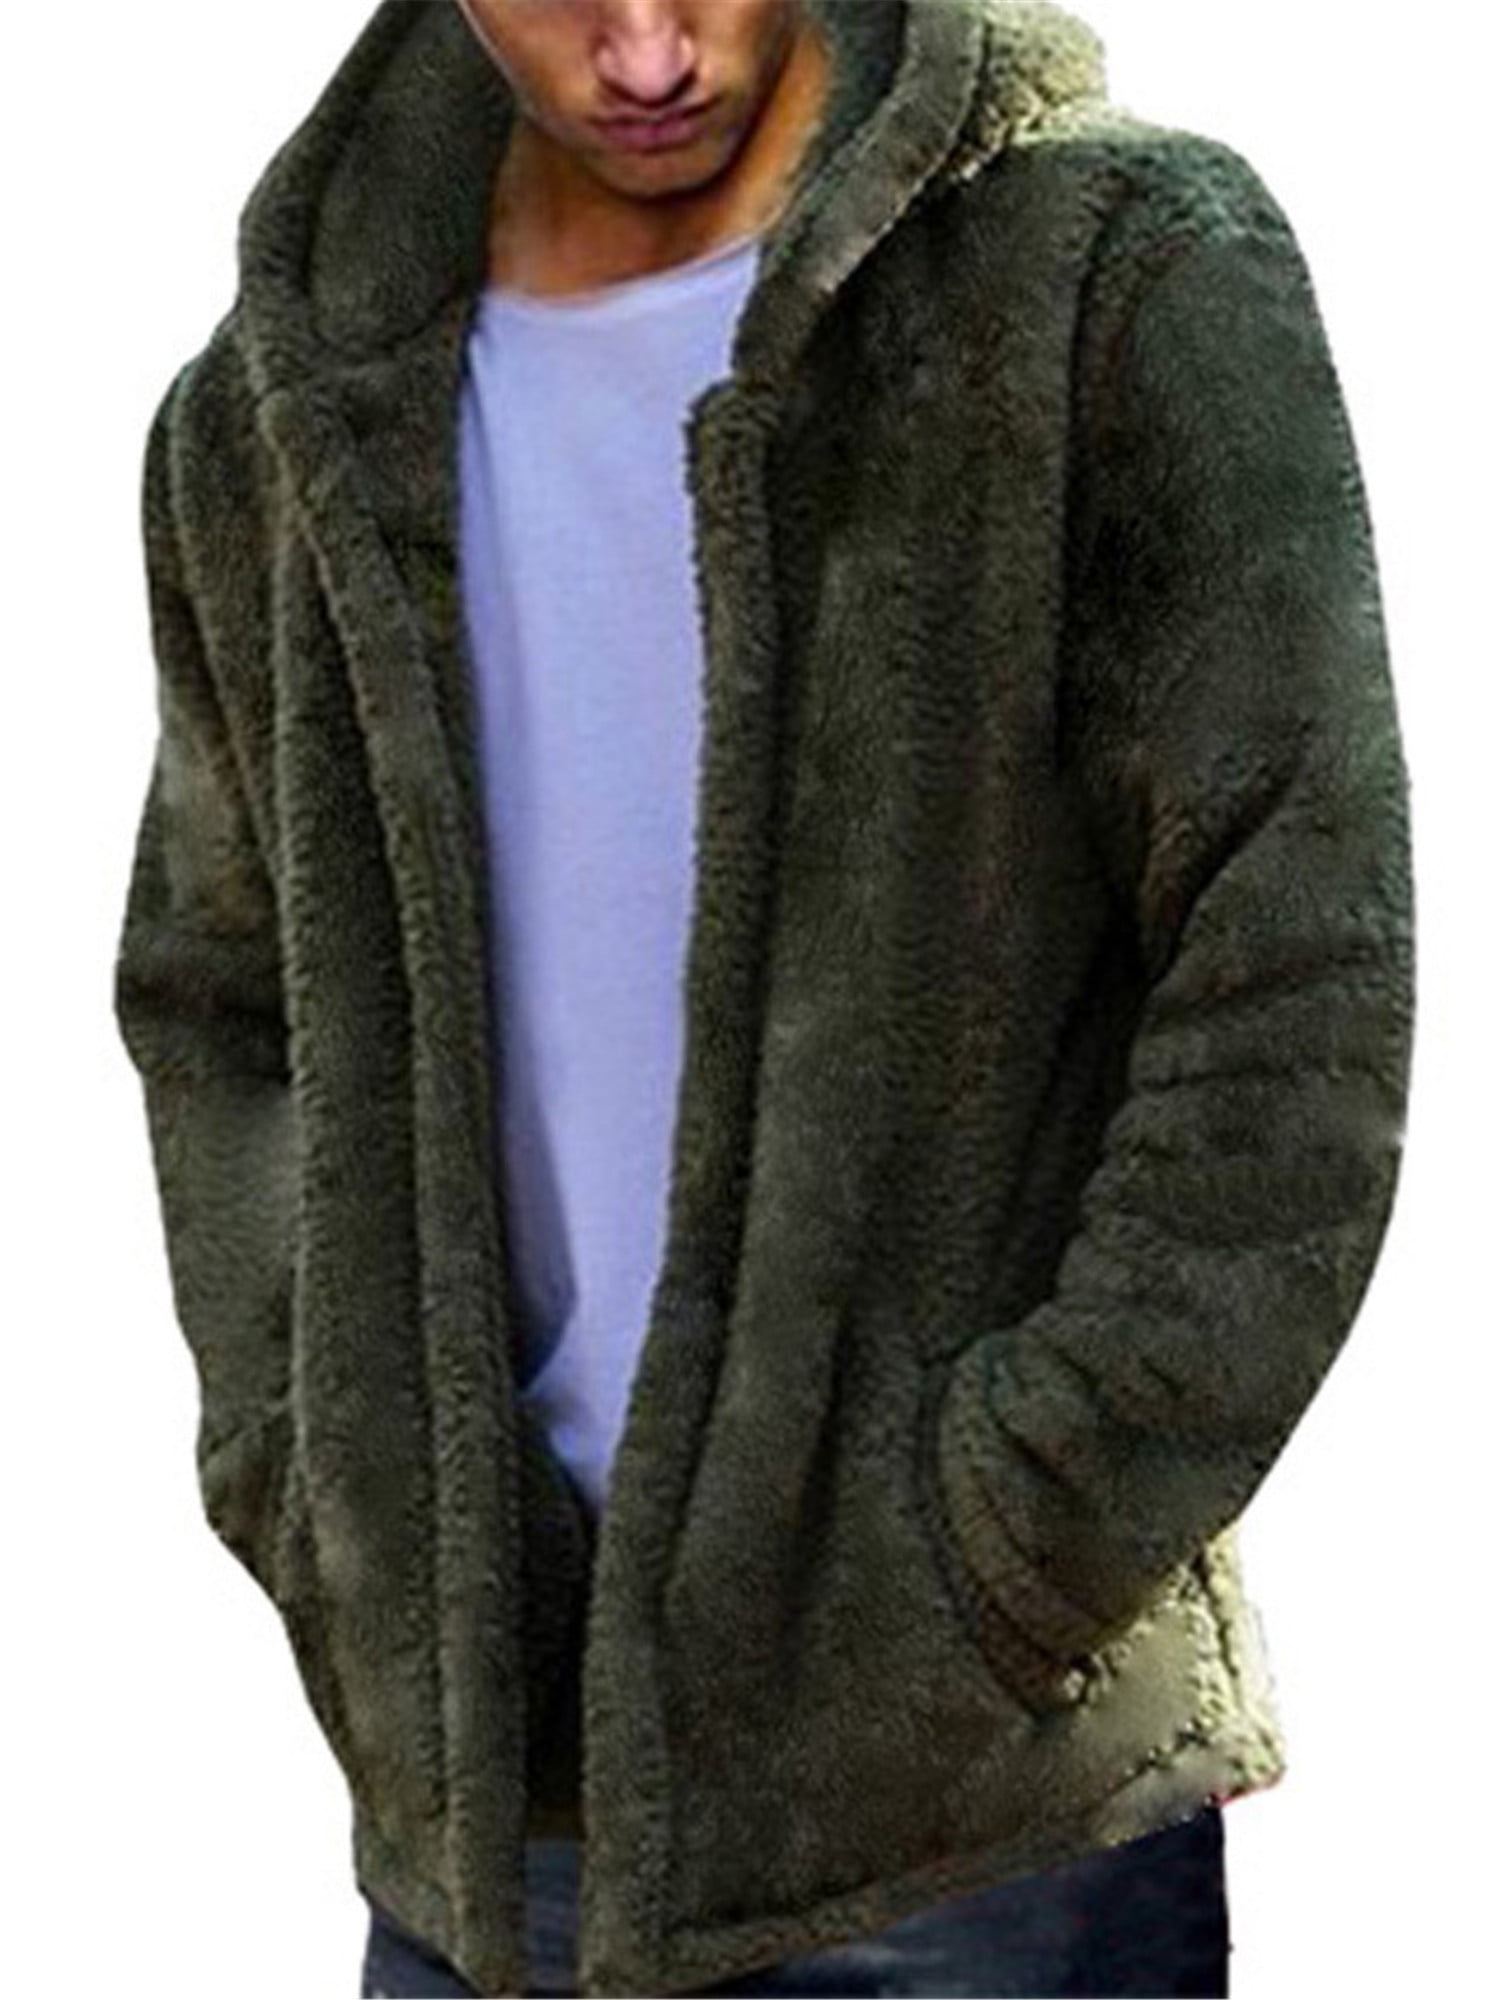 Women Fuzzy Fleece Jacket HYGCGH7Y Solid Open Front Hoodie Cardigan Coat Outwear Pockets 